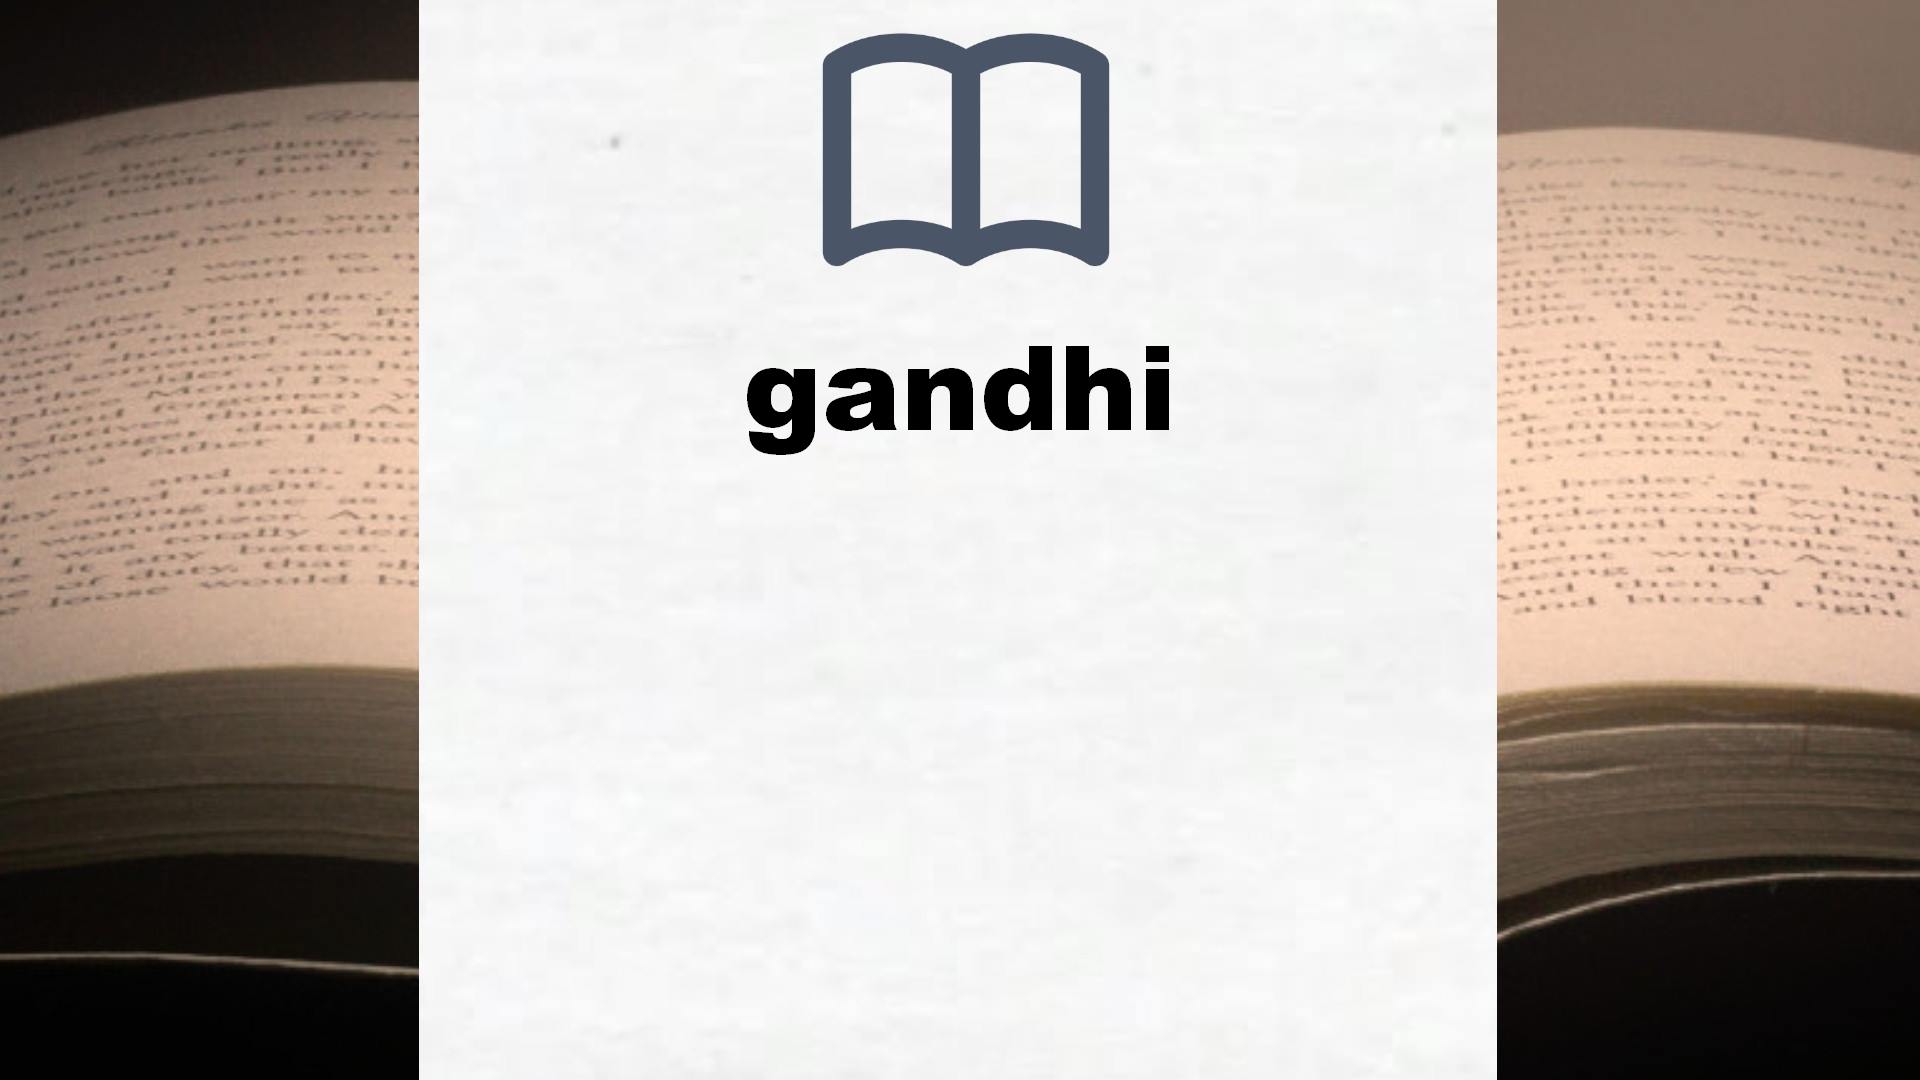 Libros sobre gandhi